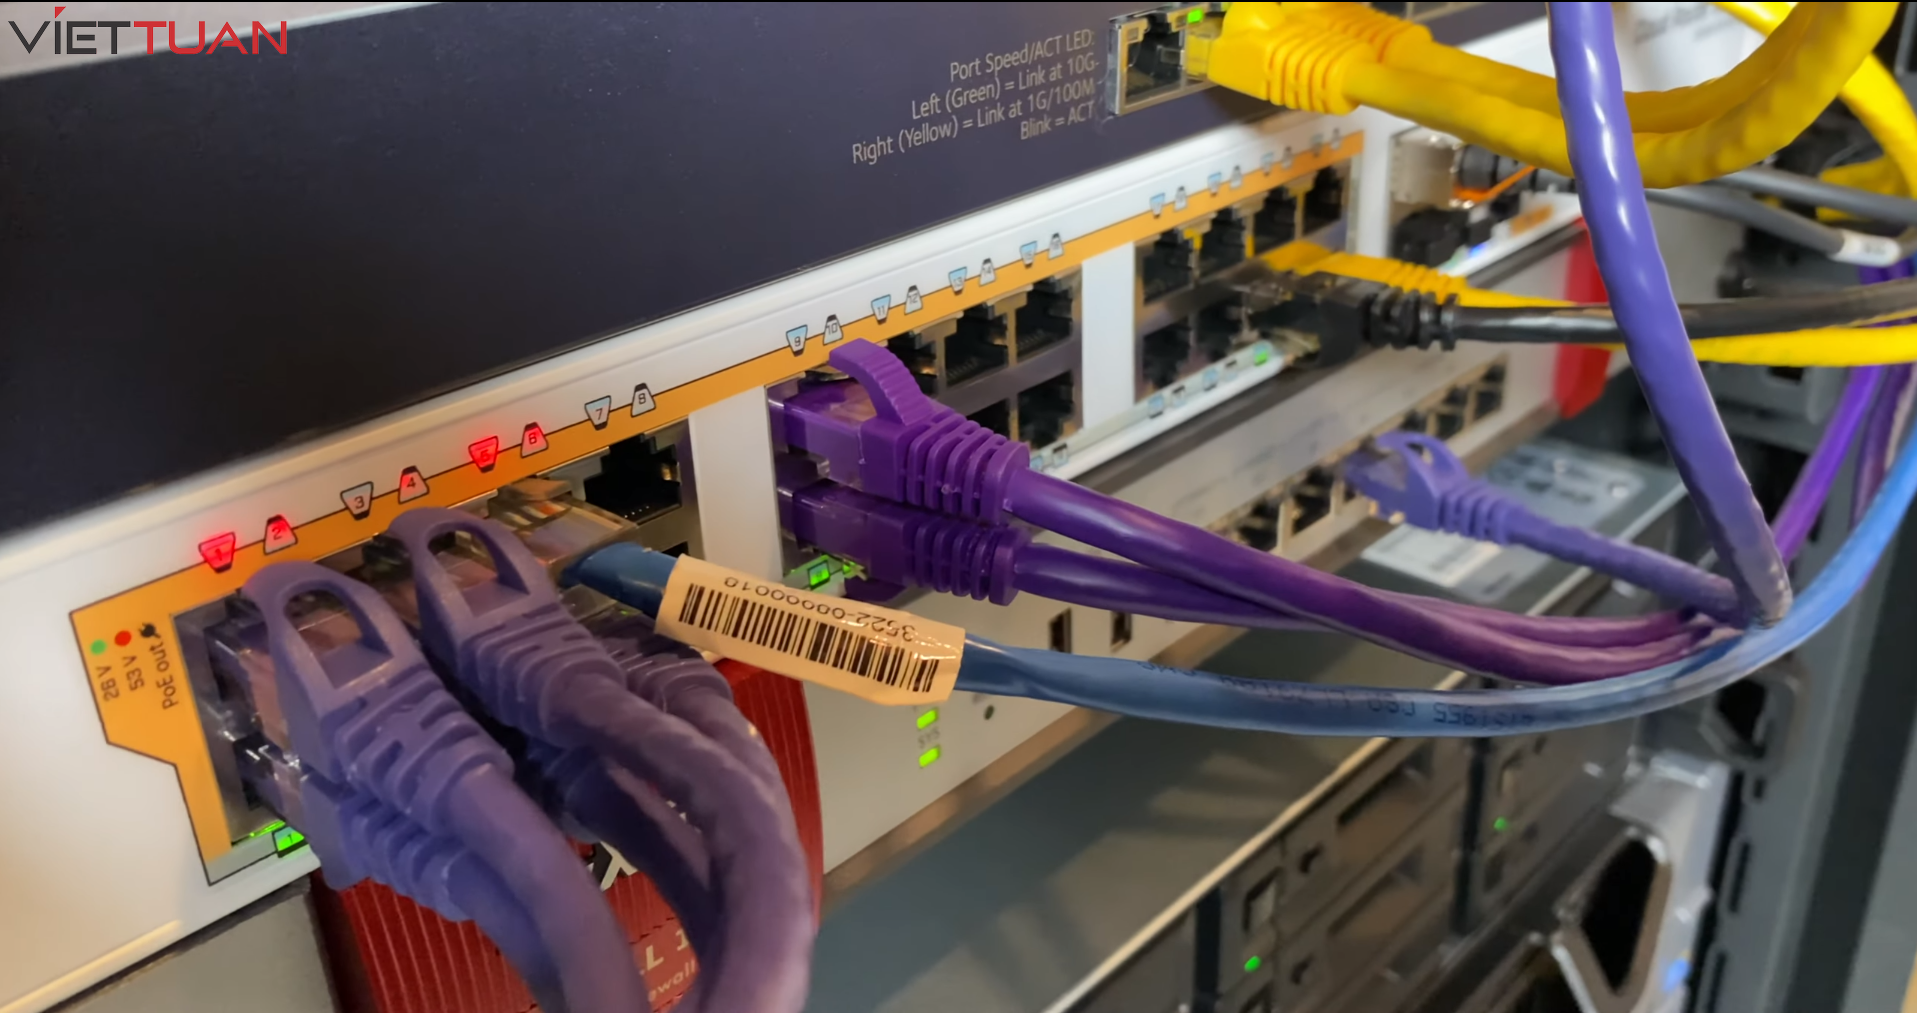 Thiết bị hỗ trợ công nghệ Power over Ethernet (PoE) với công suất lên đến 30W cho mỗi cổng